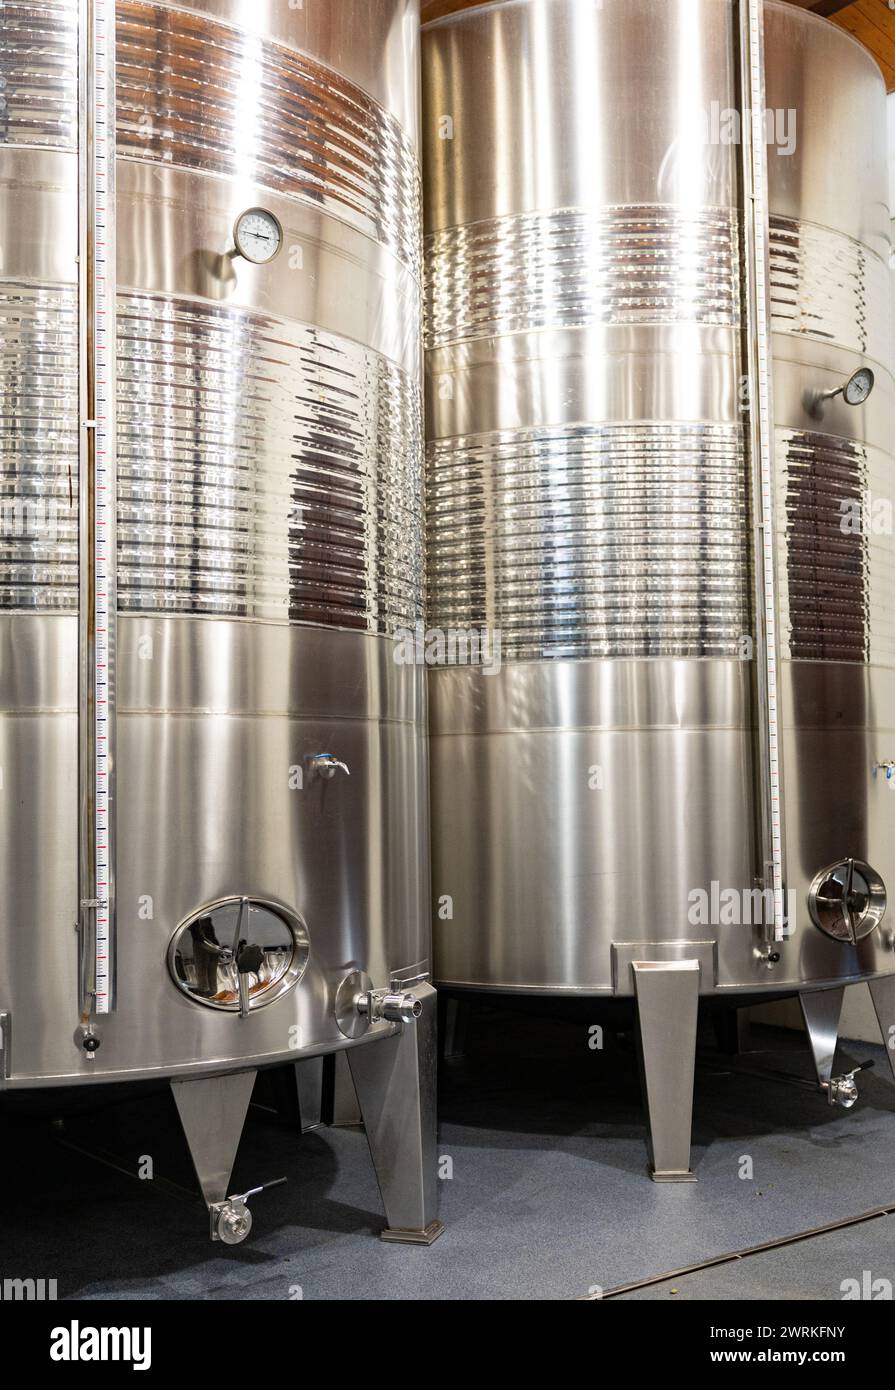 Vasche in acciaio inox lucide utilizzate per la fermentazione e l'invecchiamento del vino, che presentano una moderna tecnologia di vinificazione. Foto Stock